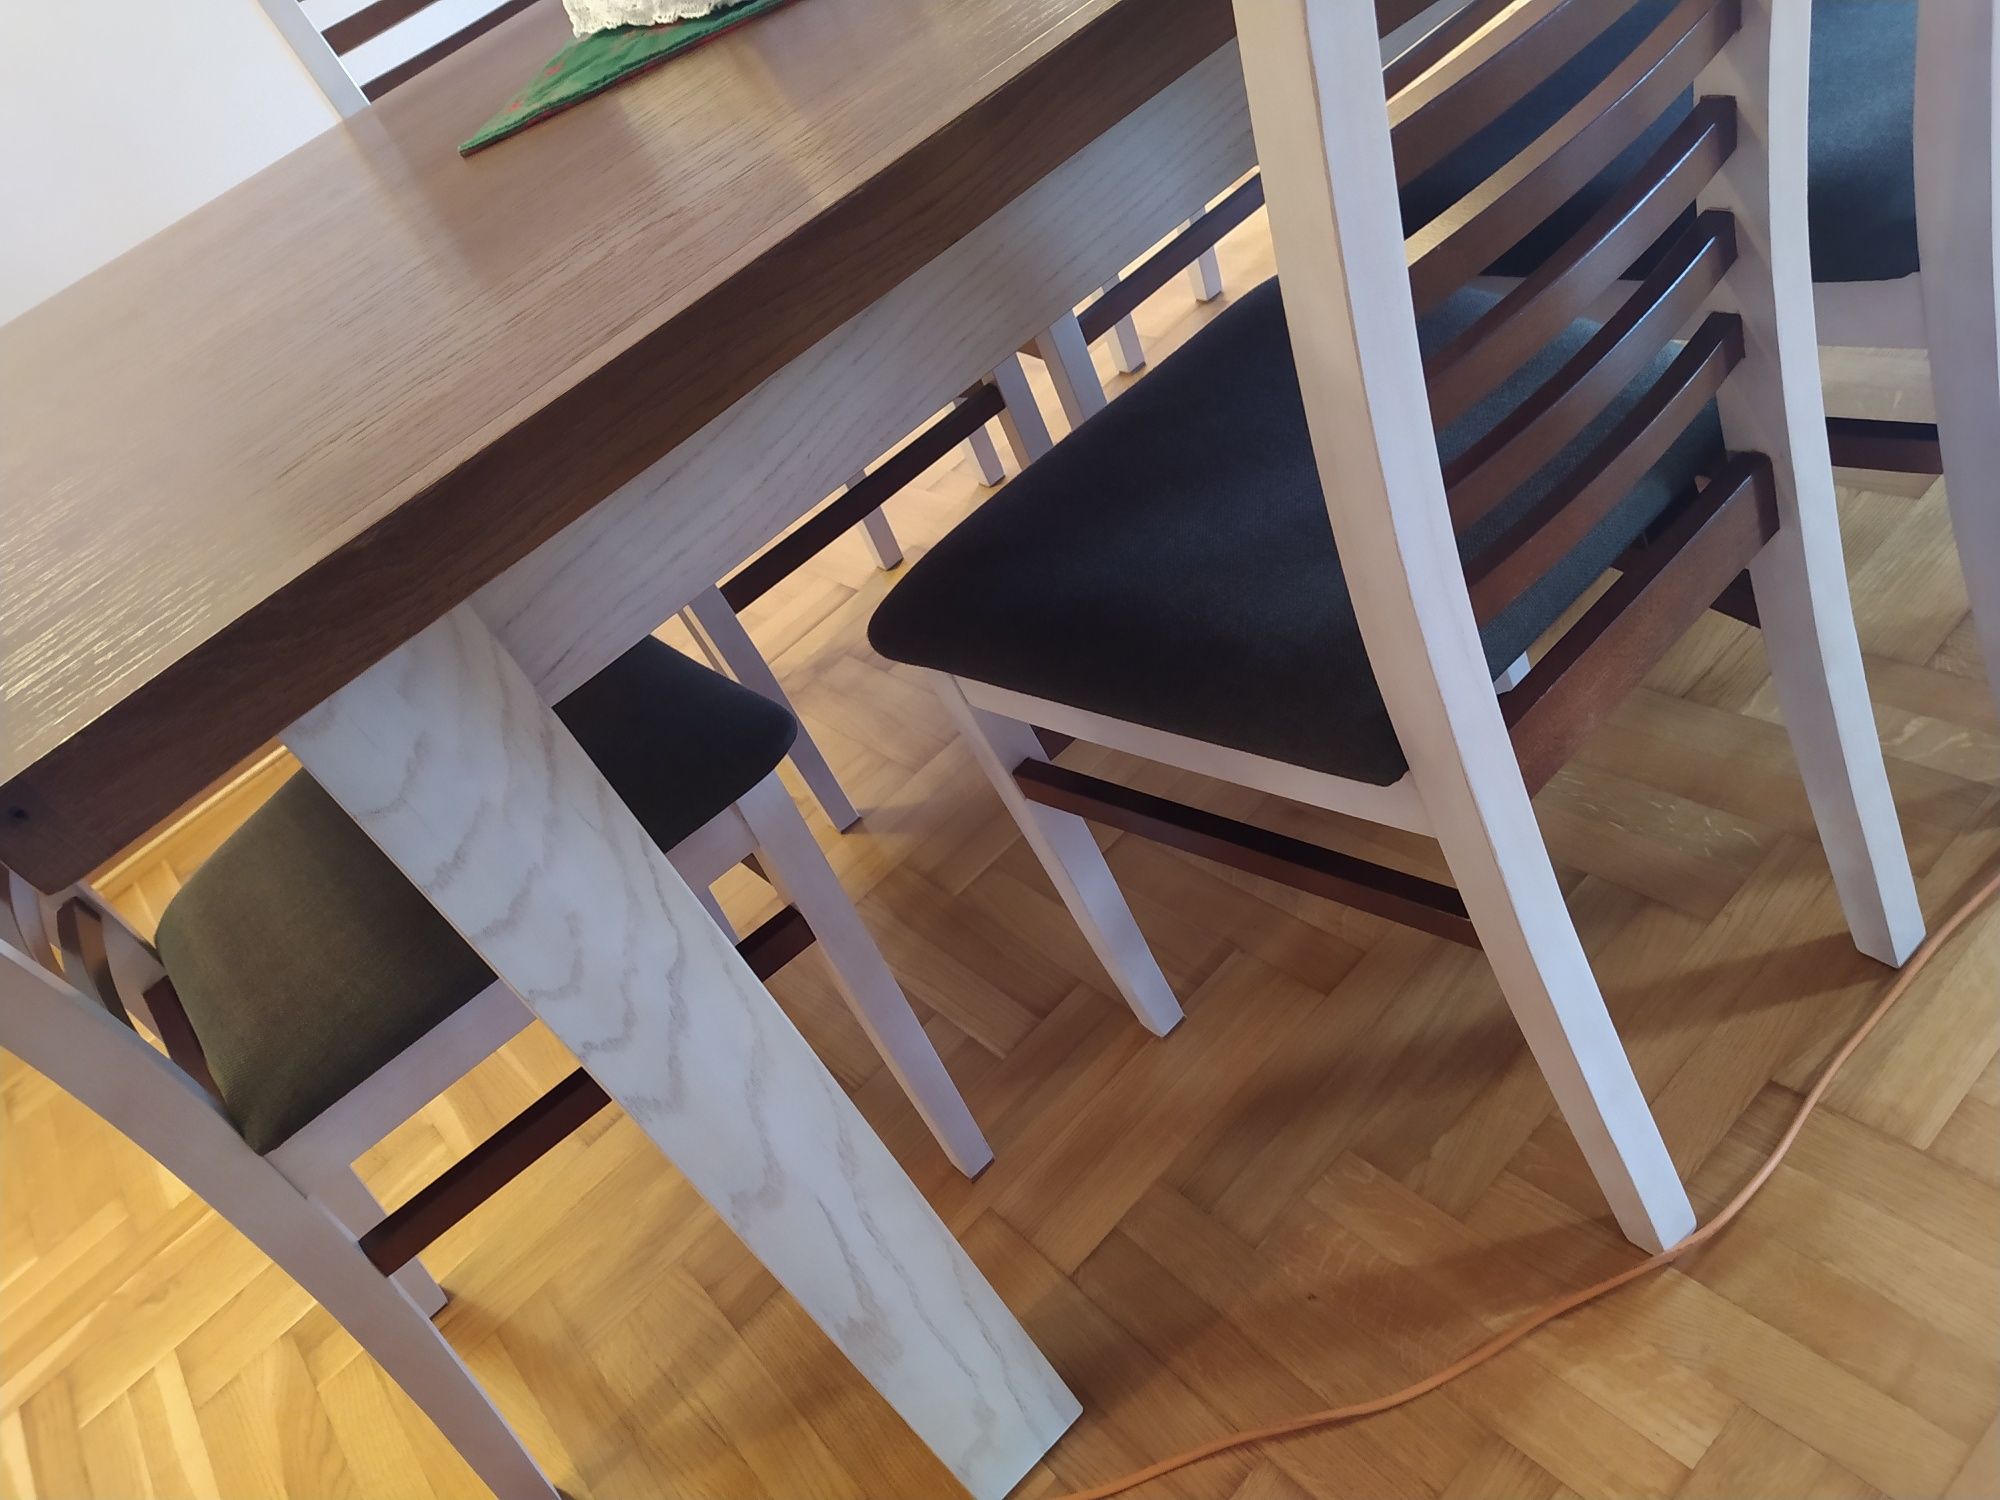 Stół dębowy rozkładany 214x103cm wraz z 10 krzesłami